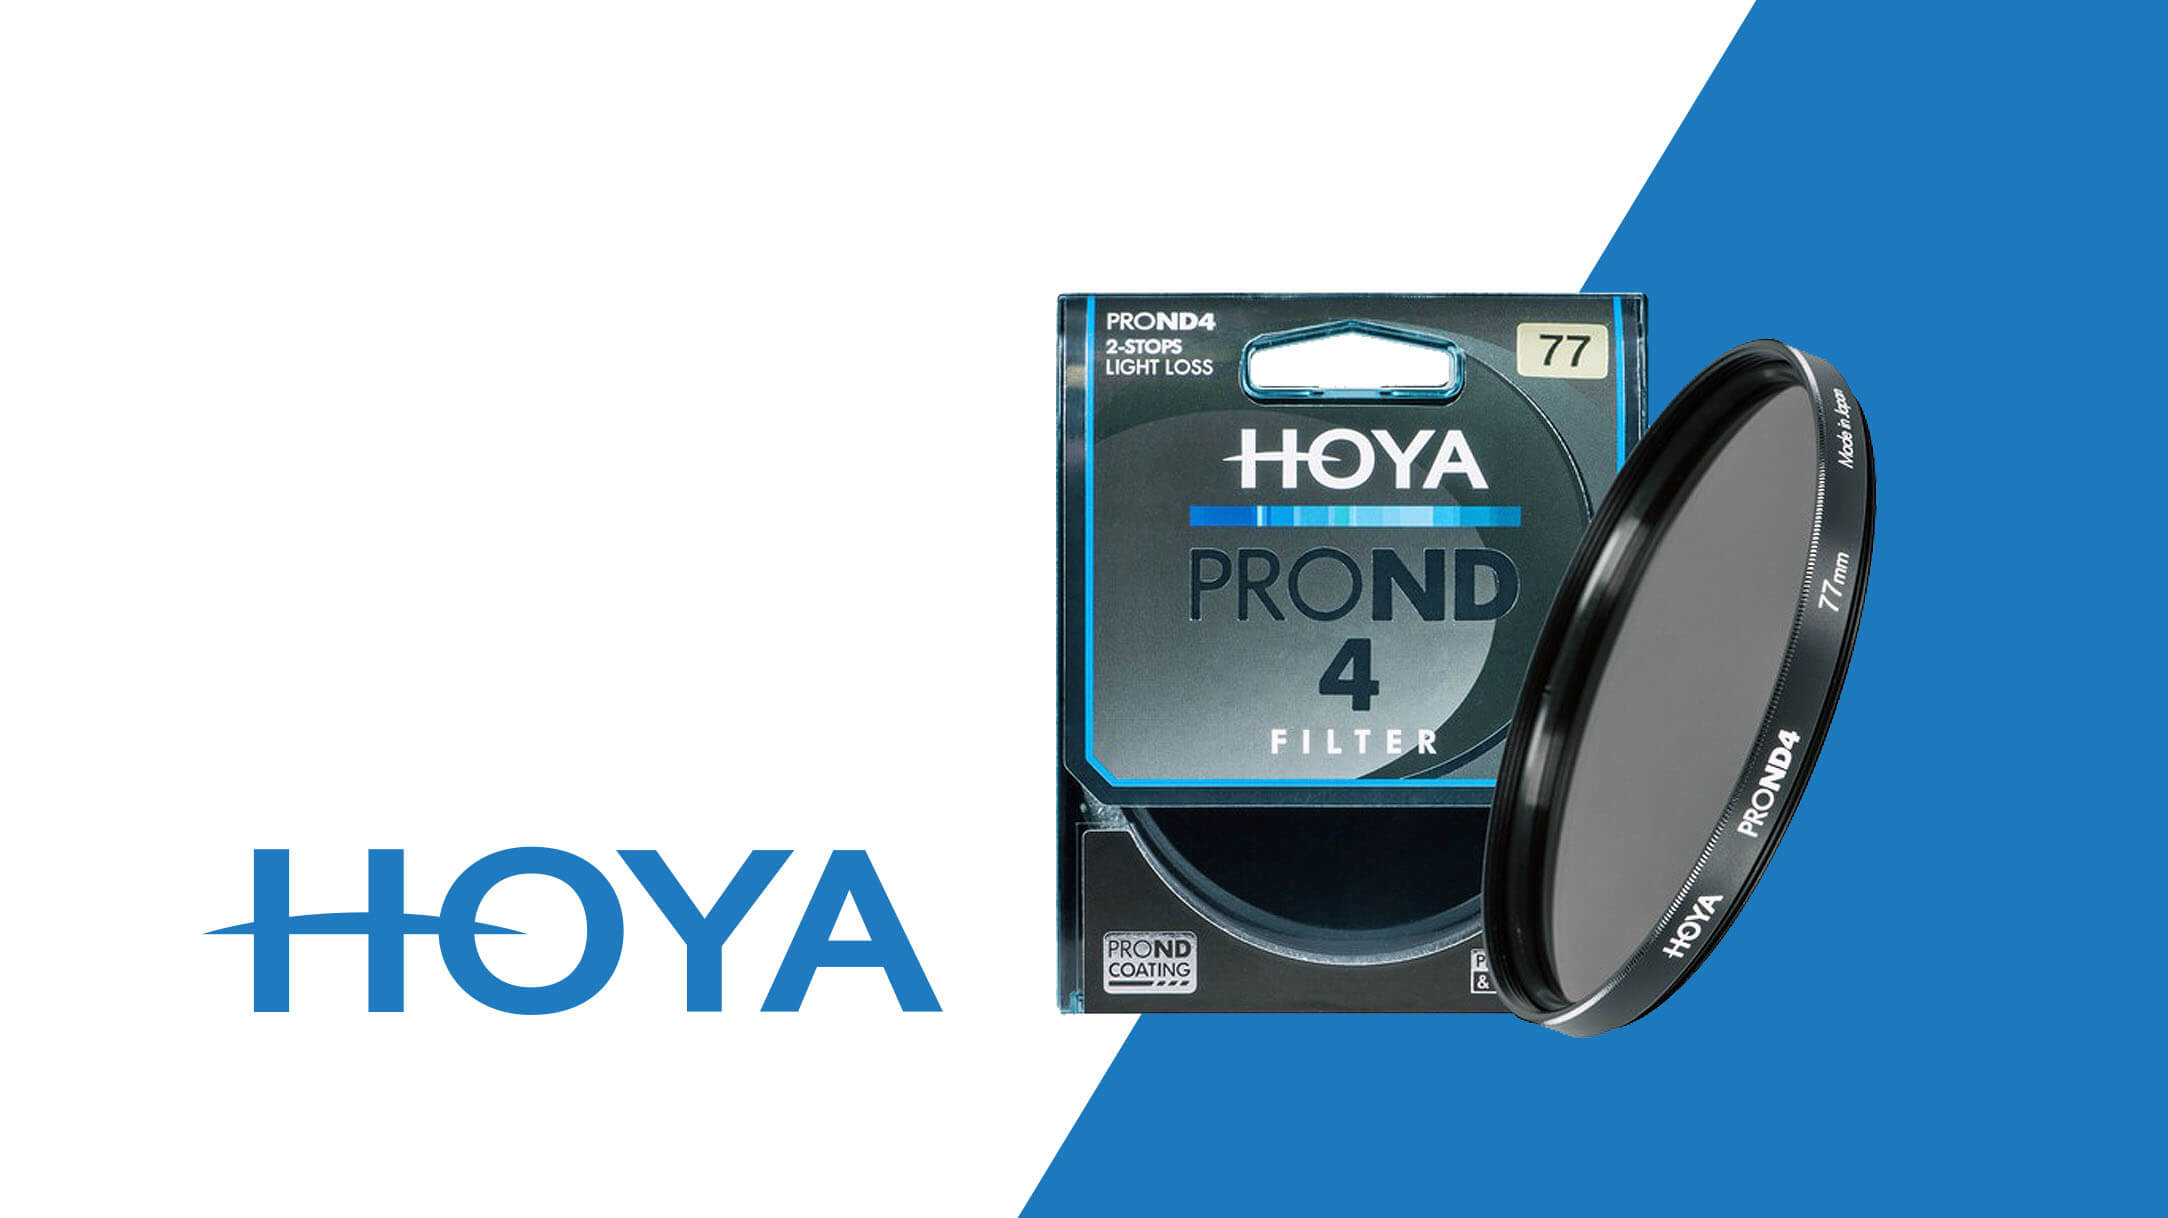 Premiera innowacyjnej serii filtrów szarych HOYA PROND